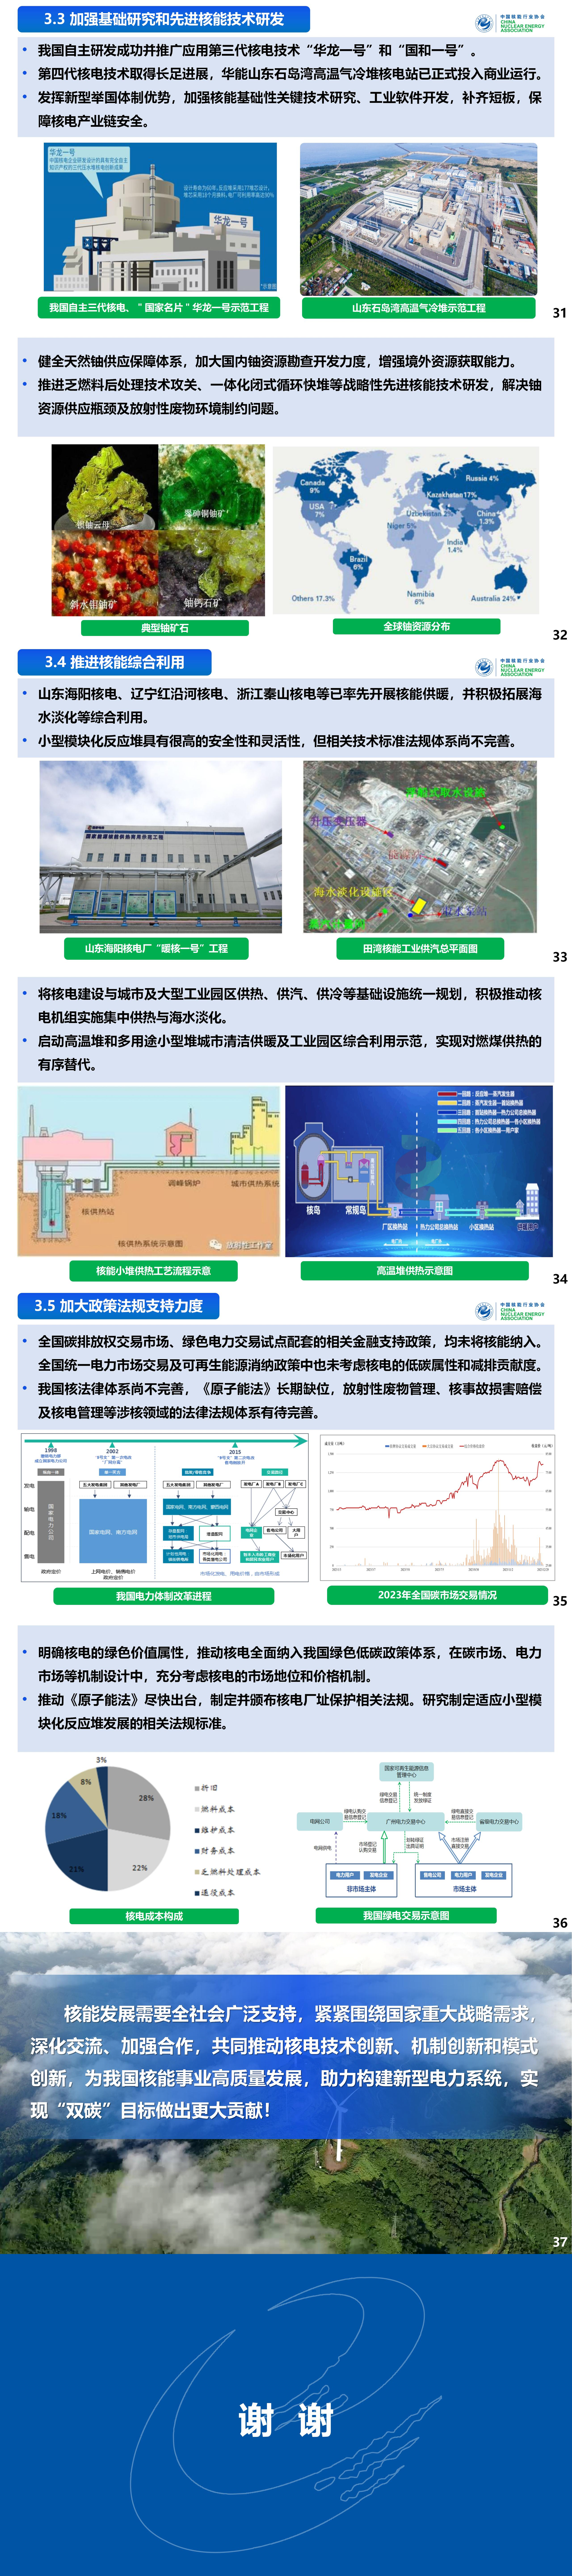 【主题报告】“双碳”背景下核电在新型电力系统的地位和作用研究_03.jpg